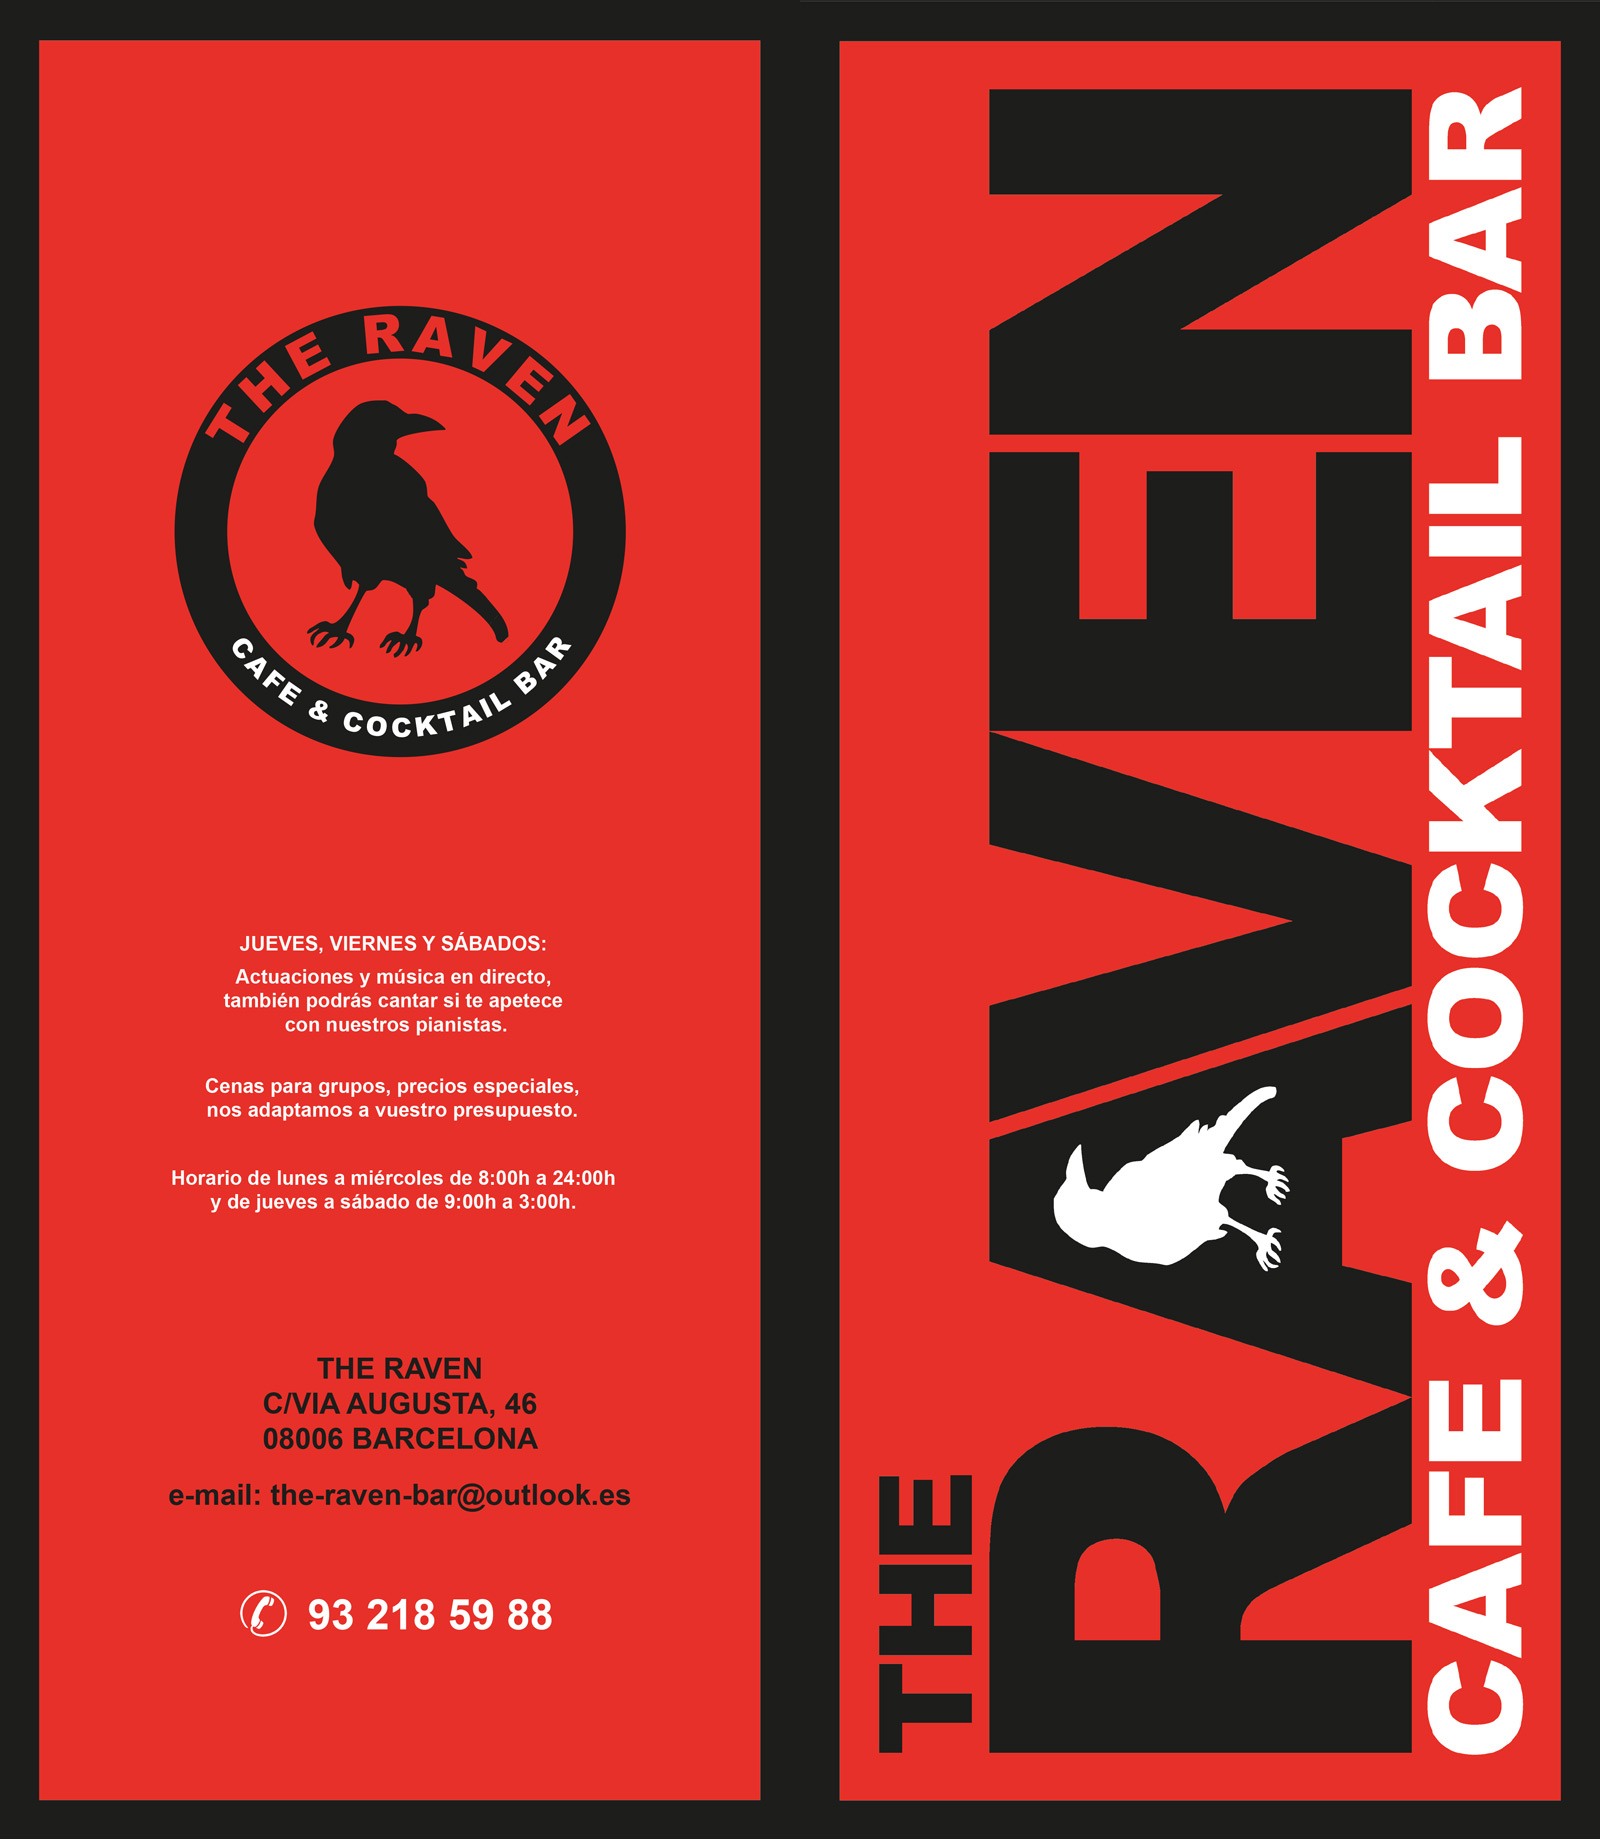 Diseño gráfico y creativo de cartas de restaurante - The Raven